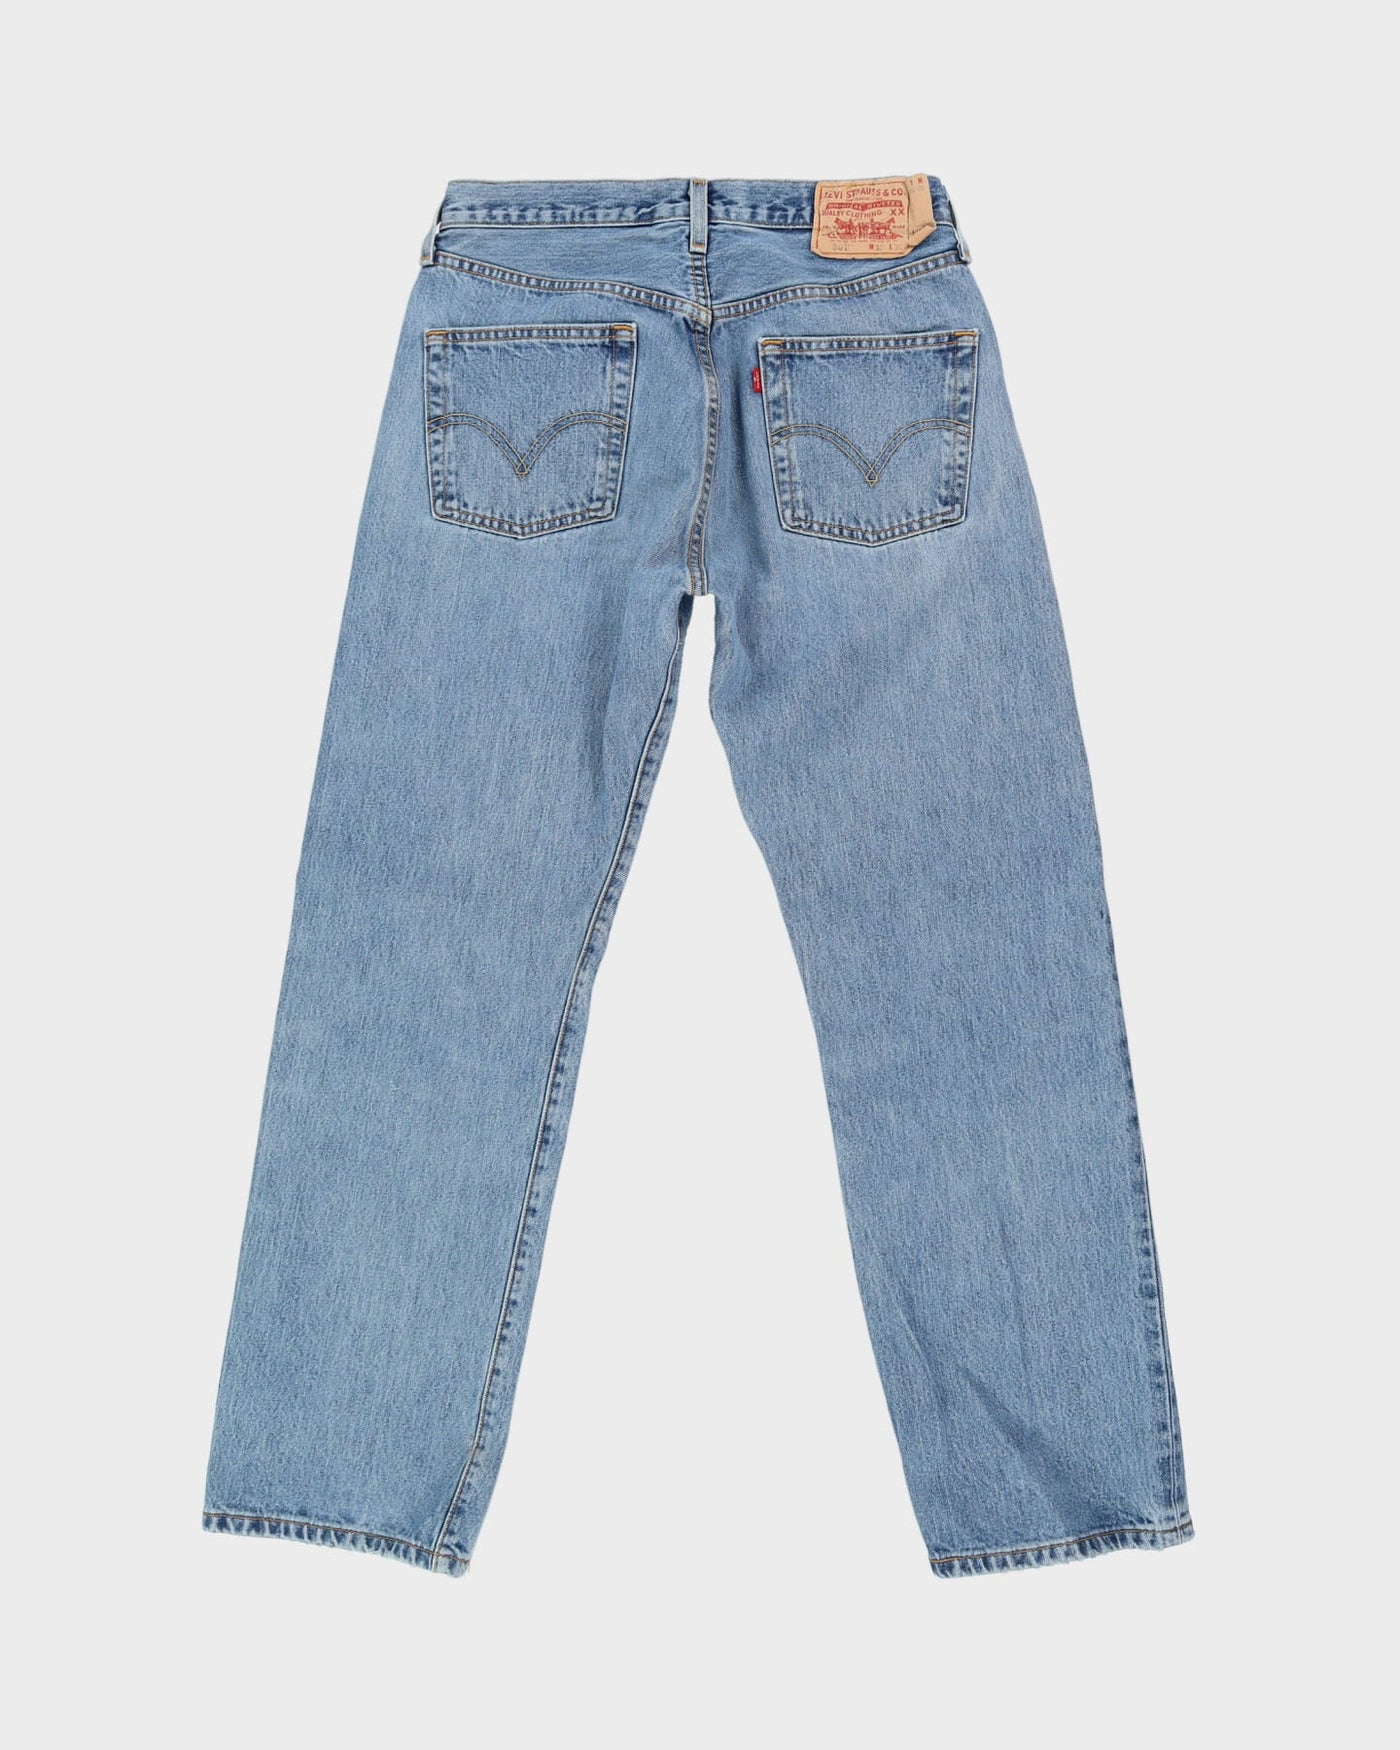 Vintage 80s Levi's 501 Blue Jeans - W31 L30